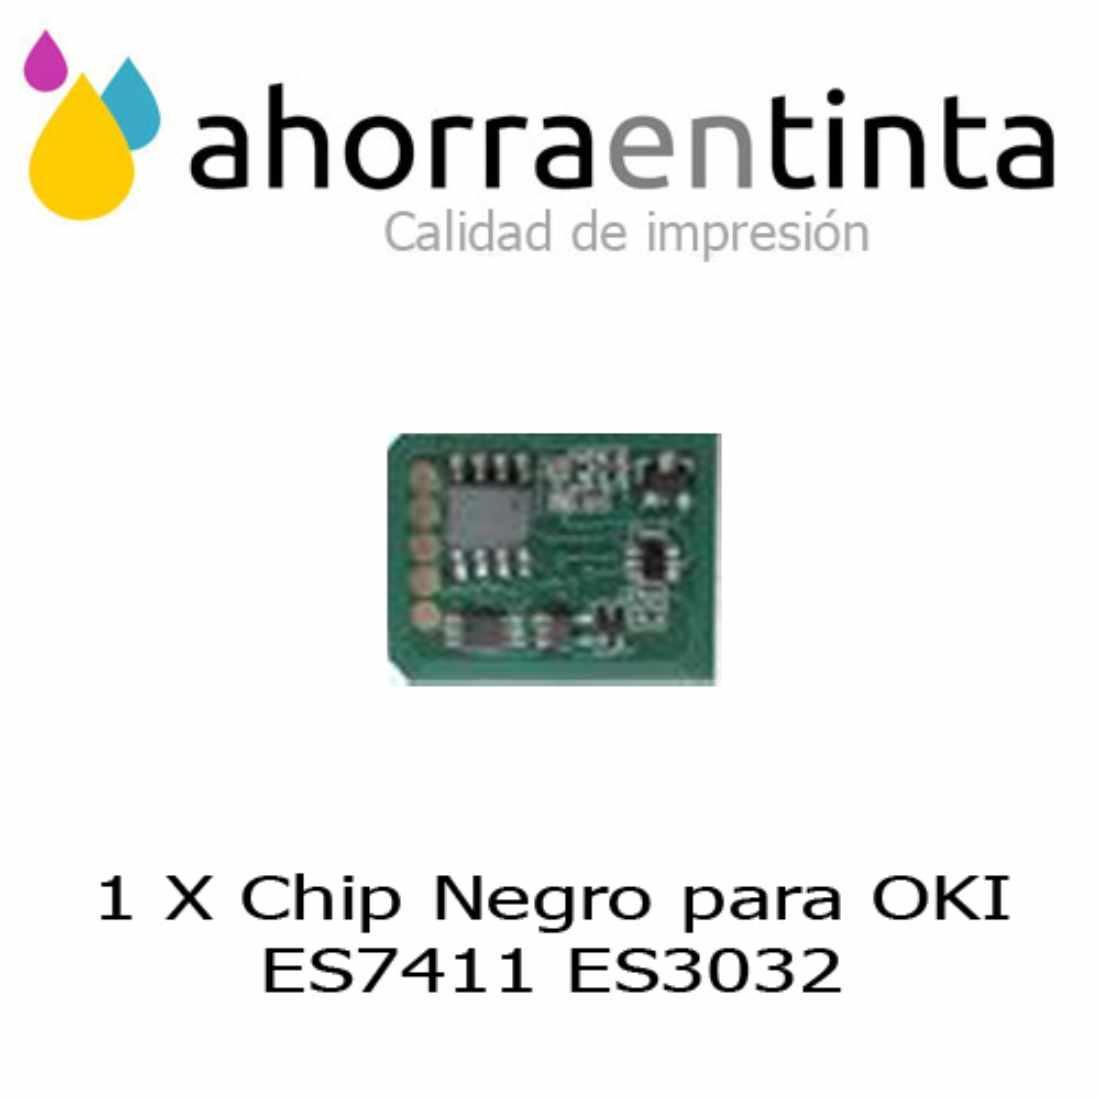 Foto de producto 1 X Chip Negro para OKI ES7411